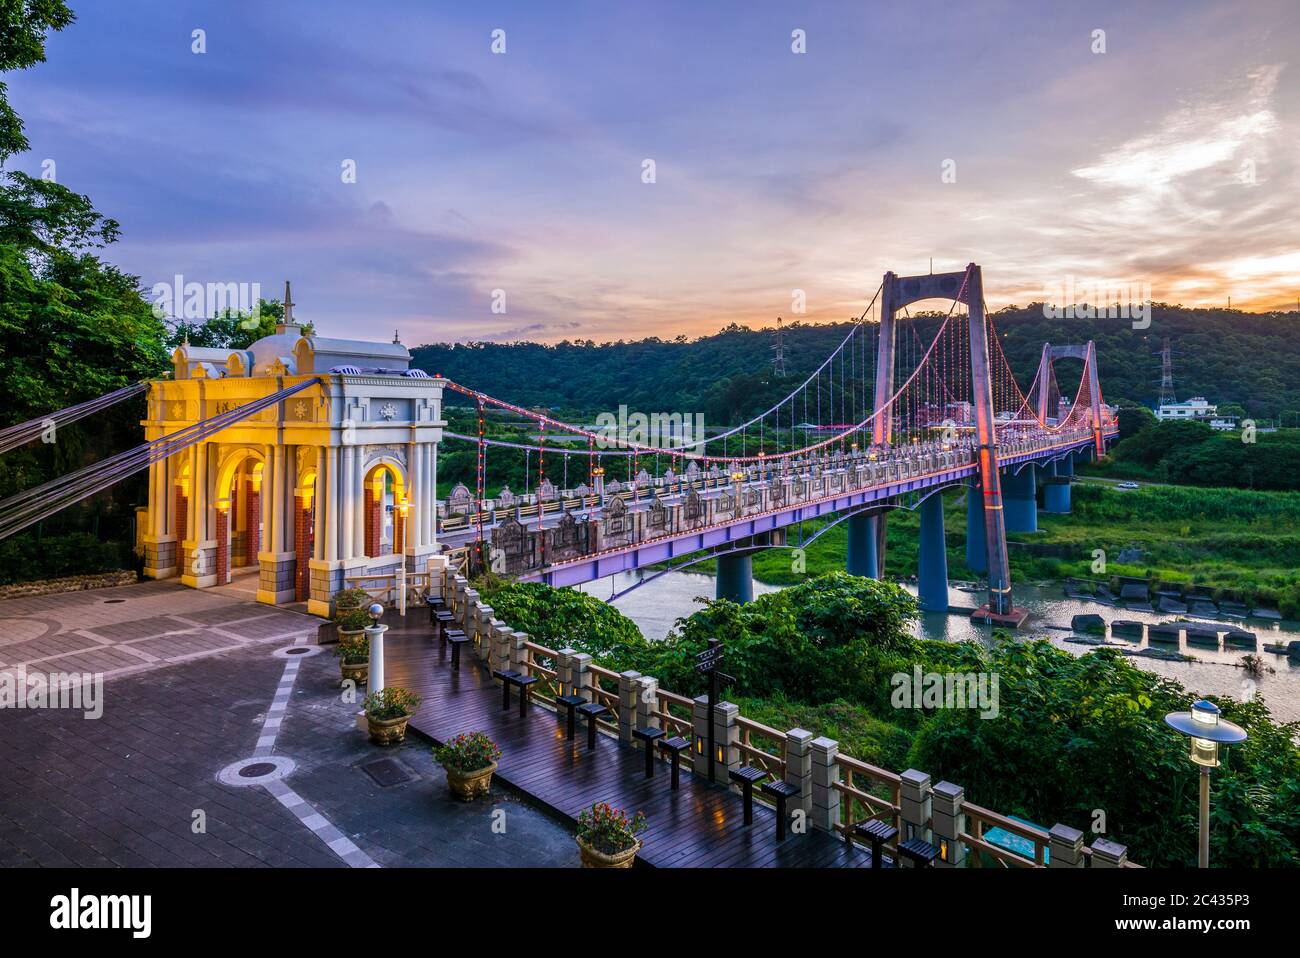 Daxi Hängebrücke in taoyuan, taiwan. Die Übersetzung des chinesischen Textes ist 'Daxi Brücke' Stockfoto